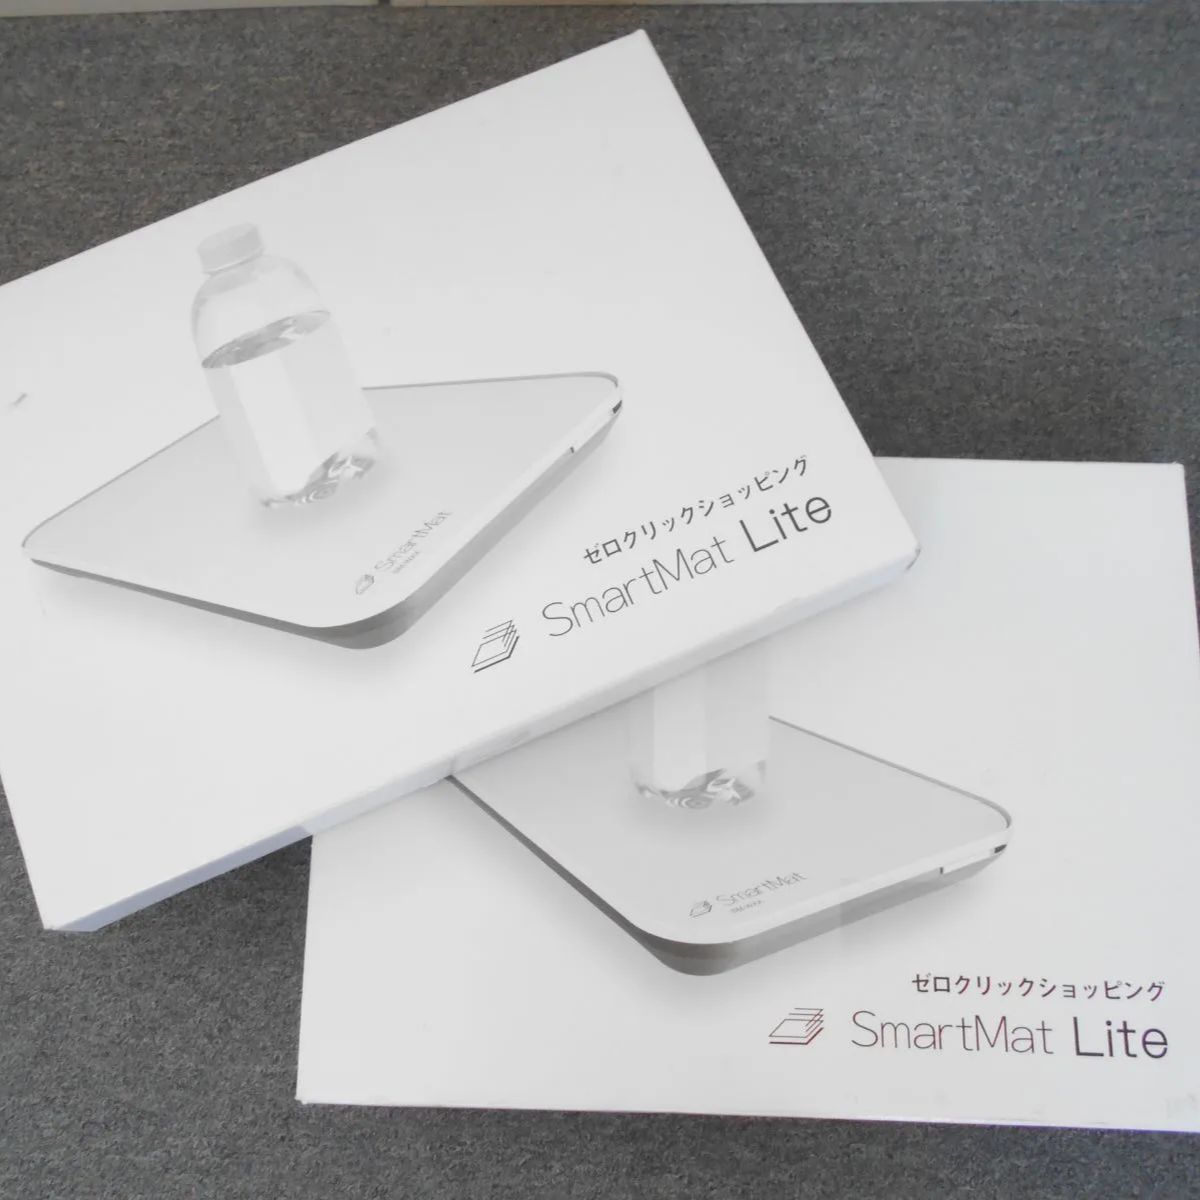 SmartMat Lite 2 Amazon スマートマットライト2 A3サイズ SM-W32 2個セット  減ったら自動でAmazonに再注文してくれるIoT